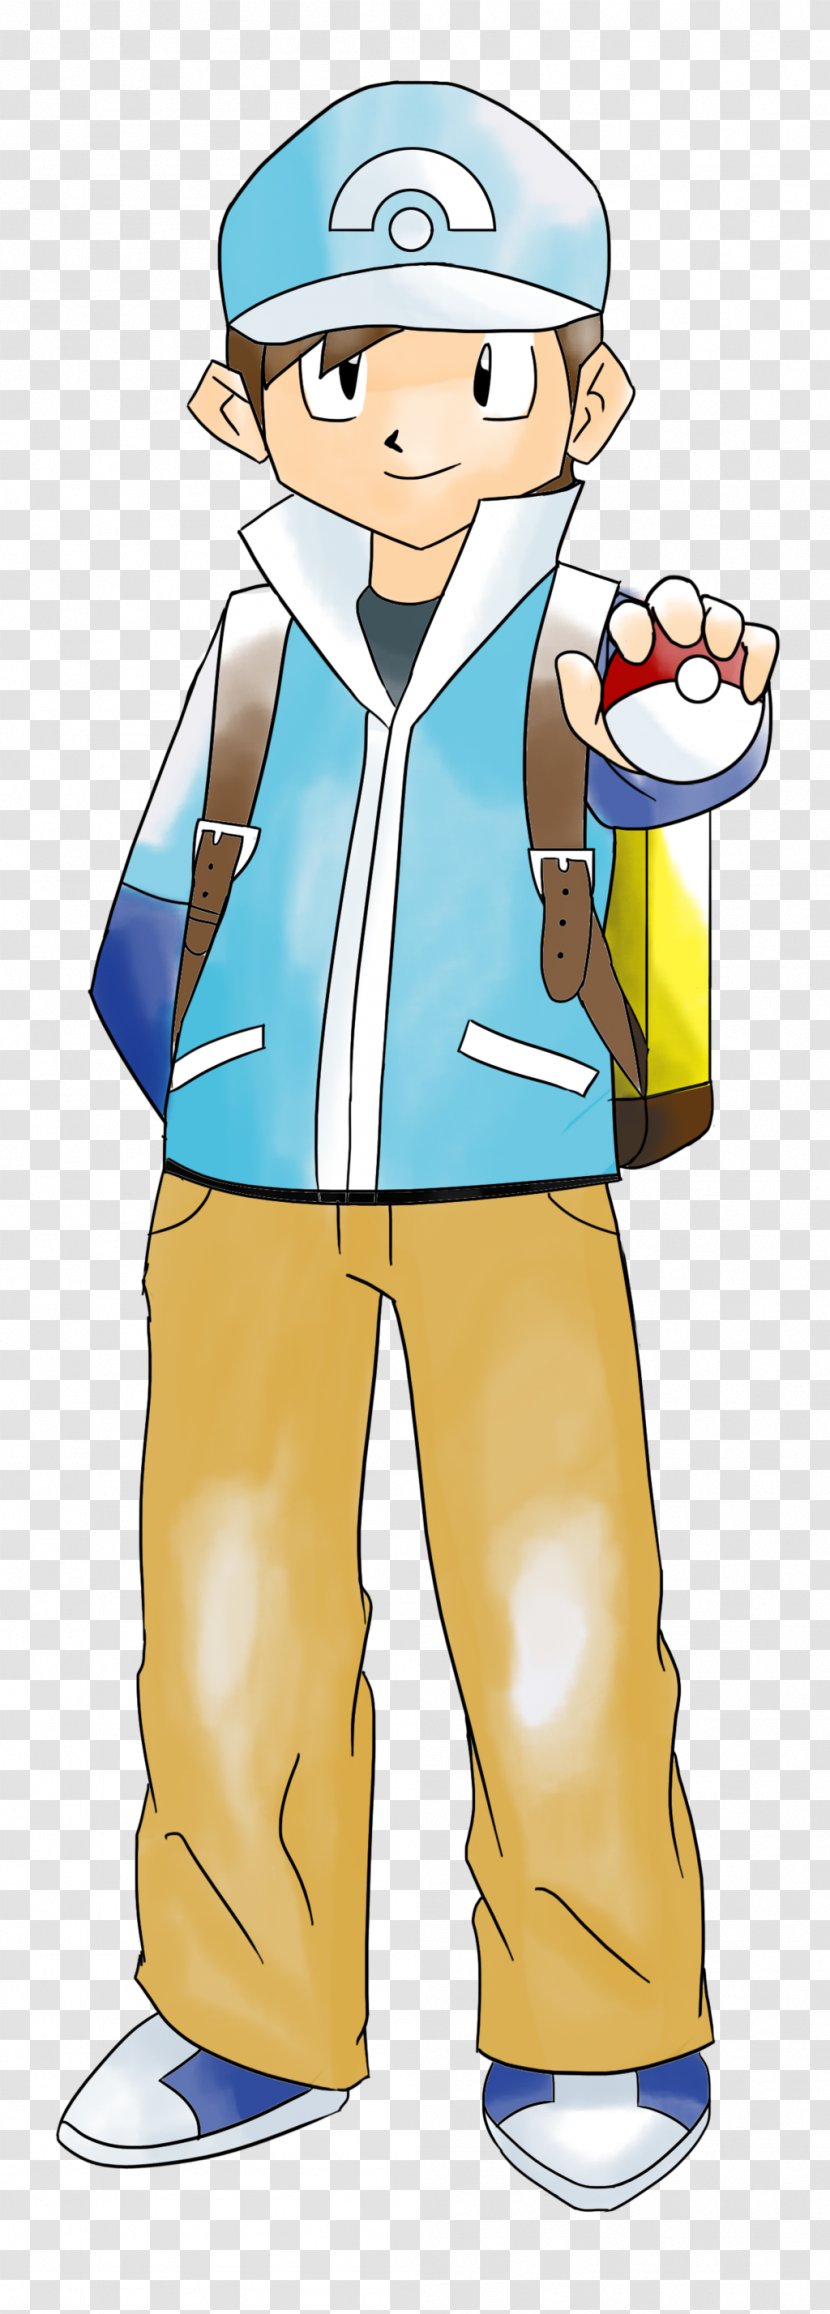 Pokémon Yellow Trainer Sneakers Uniform - Joint Transparent PNG